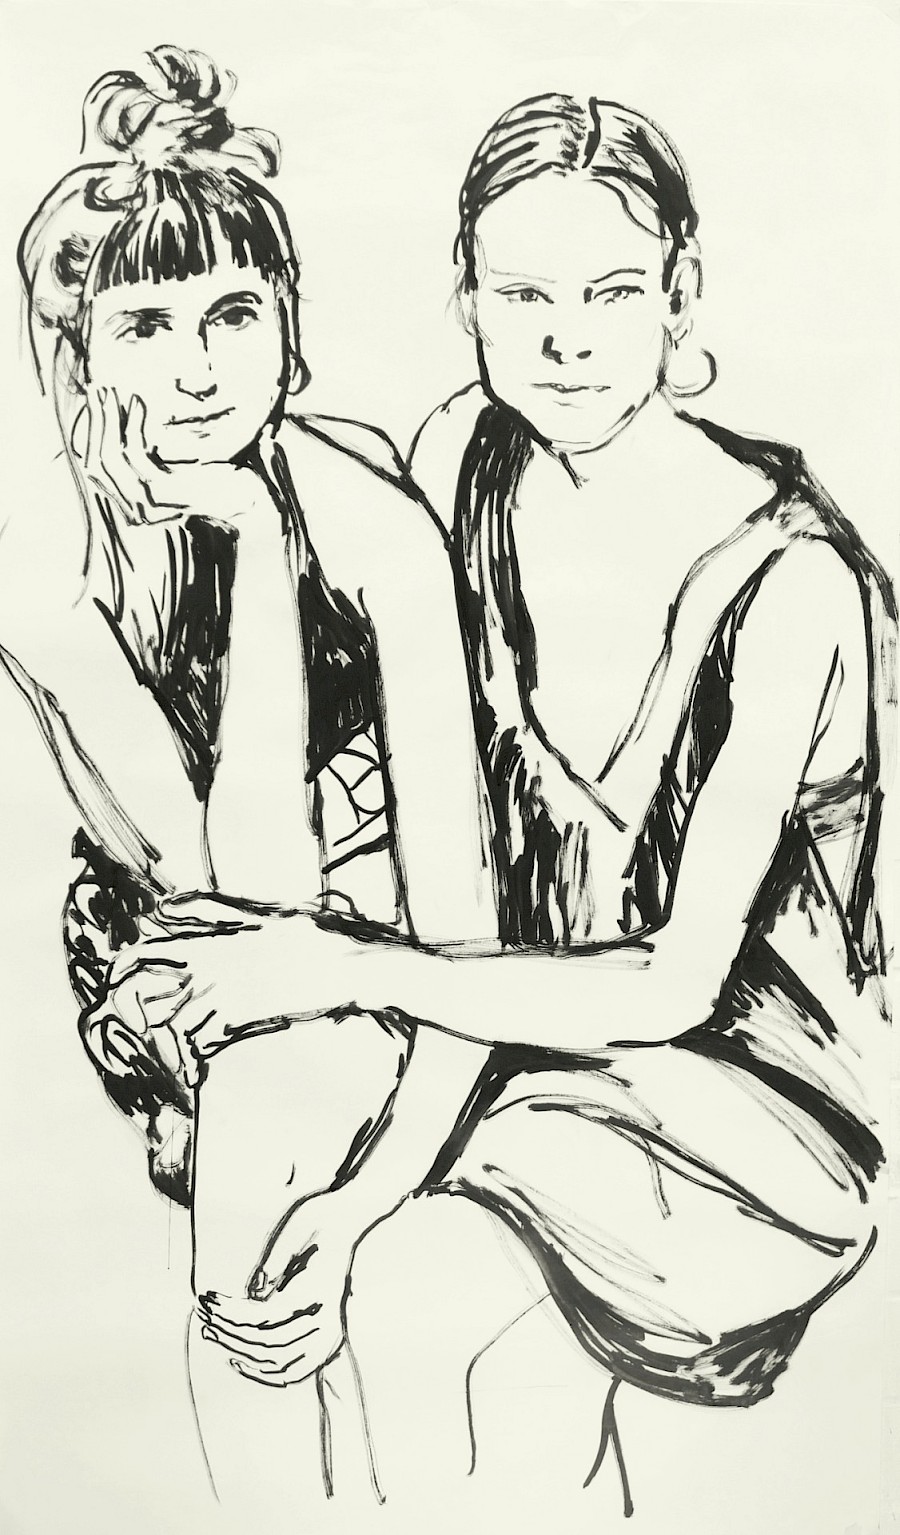 Alicja & Verena
175 x 100 cm
Tusche auf Papier
2021